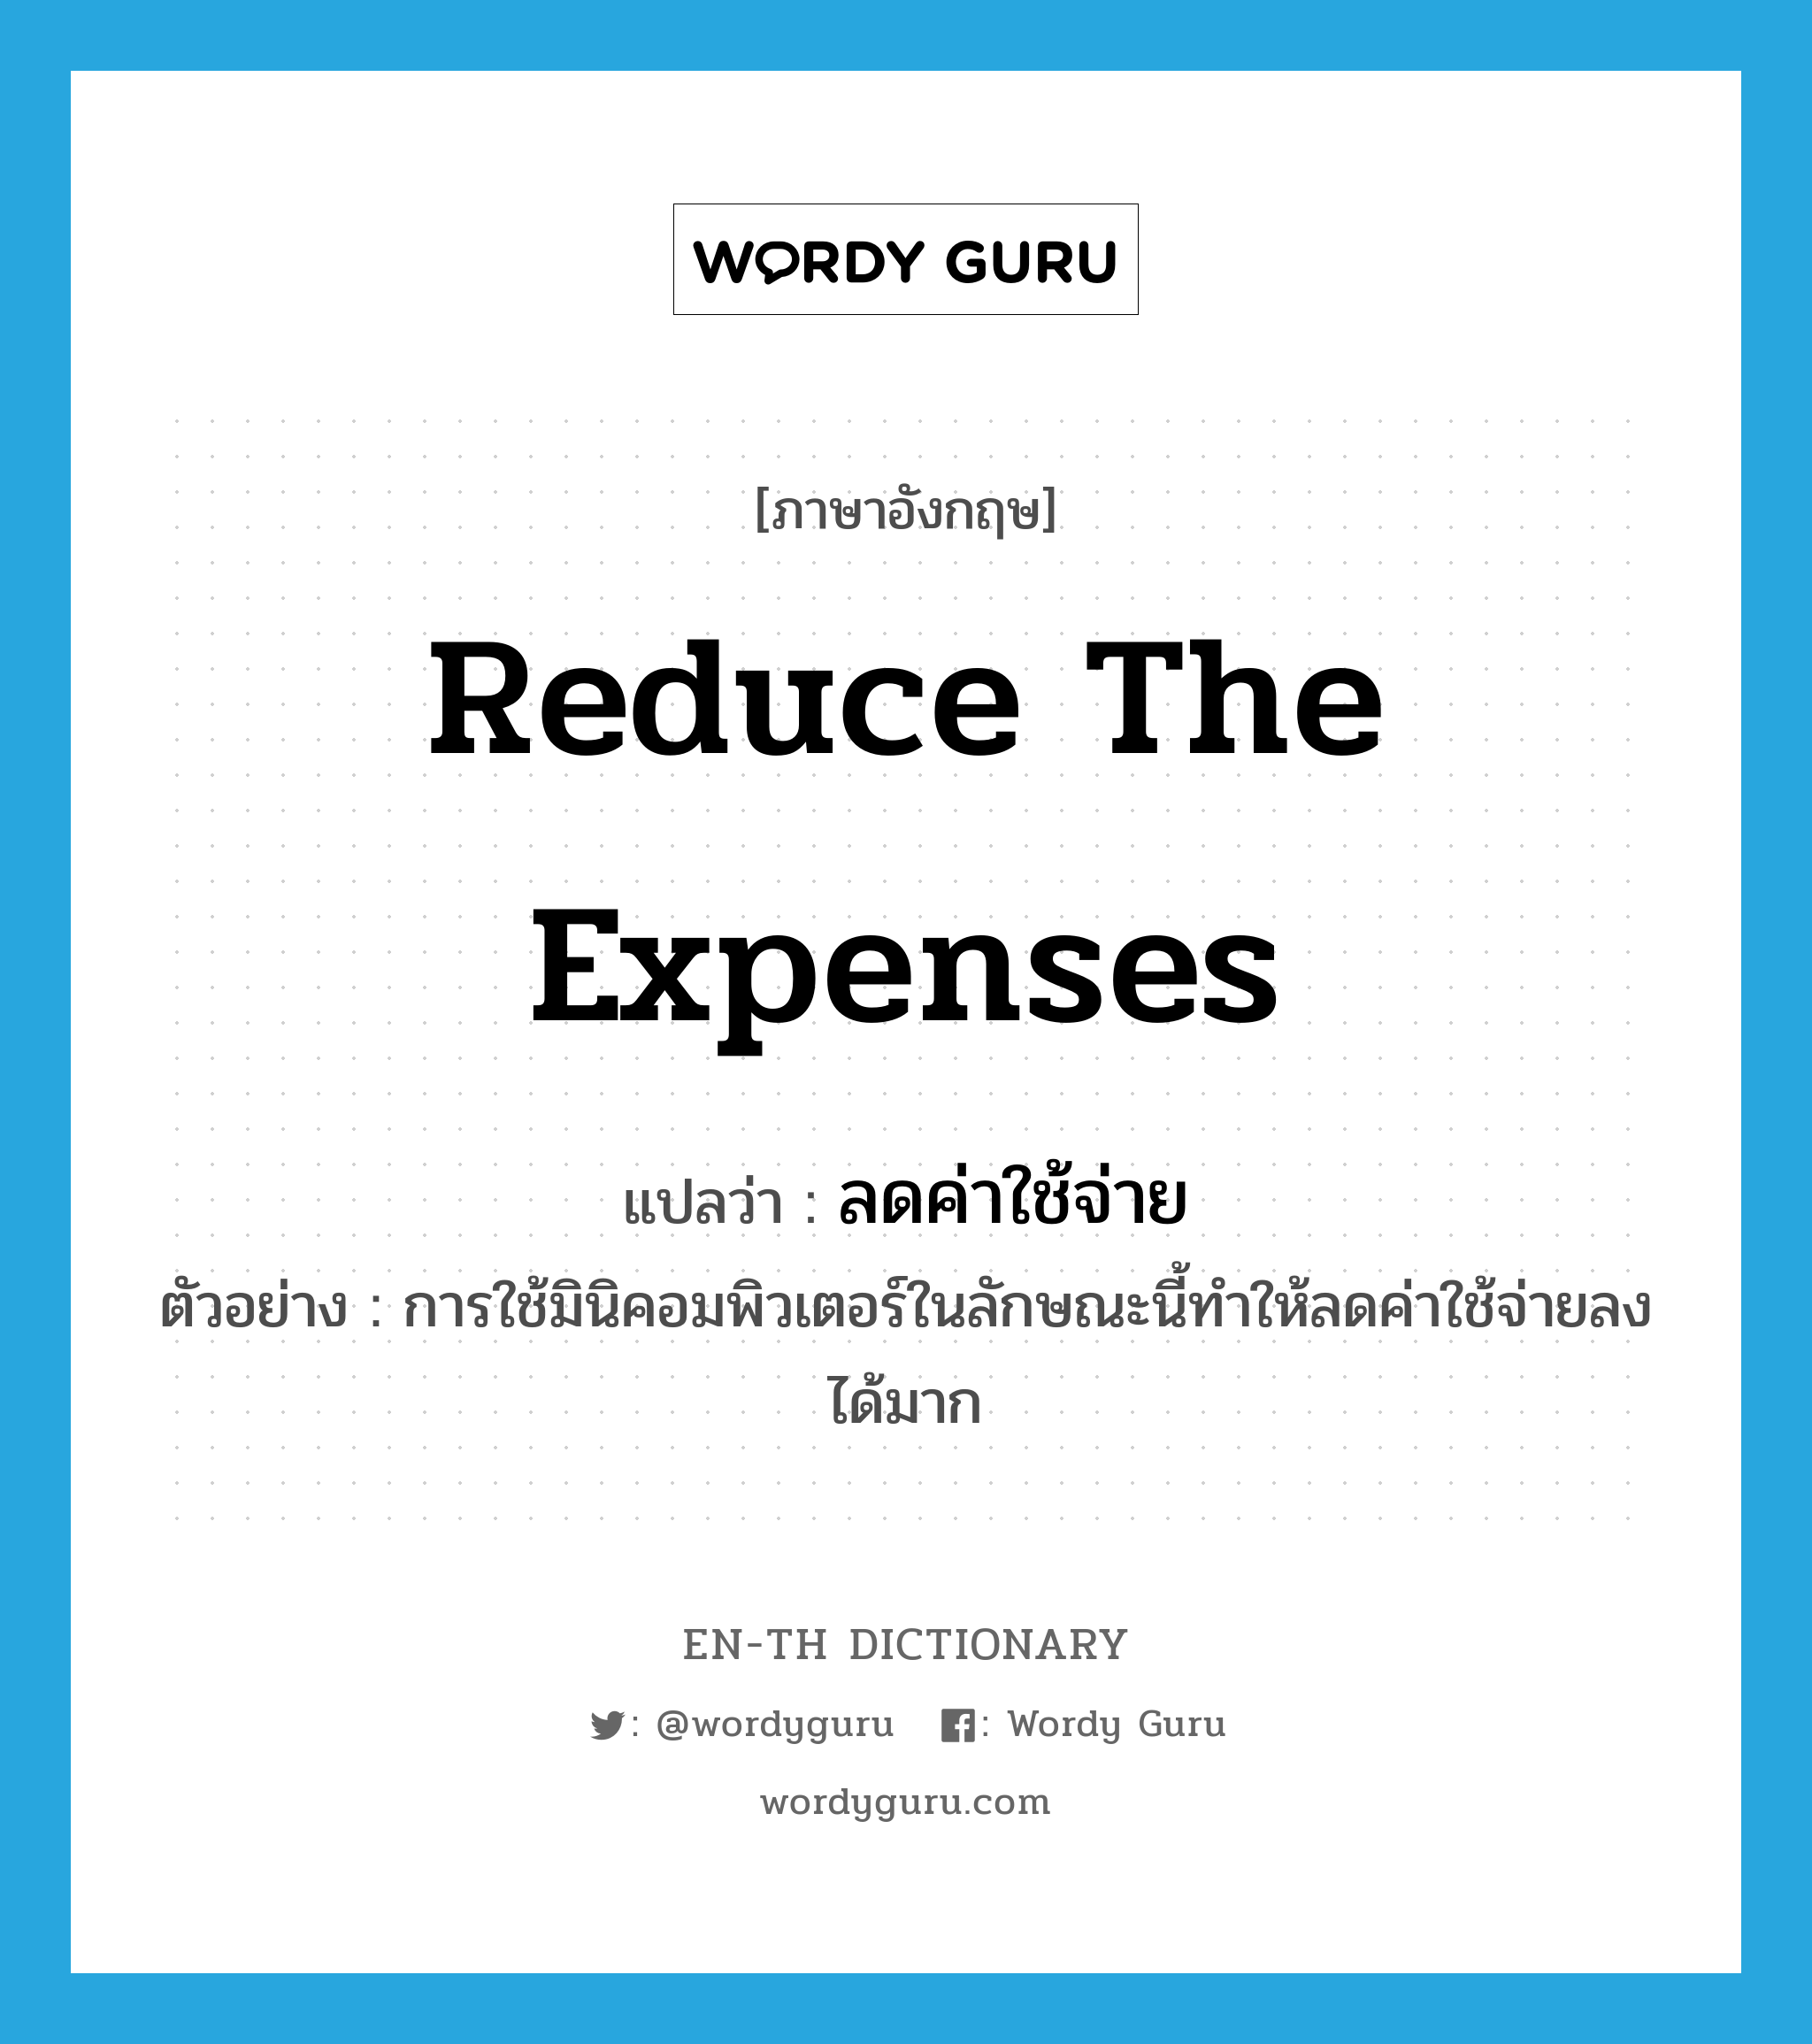 reduce the expenses แปลว่า?, คำศัพท์ภาษาอังกฤษ reduce the expenses แปลว่า ลดค่าใช้จ่าย ประเภท V ตัวอย่าง การใช้มินิคอมพิวเตอร์ในลักษณะนี้ทำให้ลดค่าใช้จ่ายลงได้มาก หมวด V